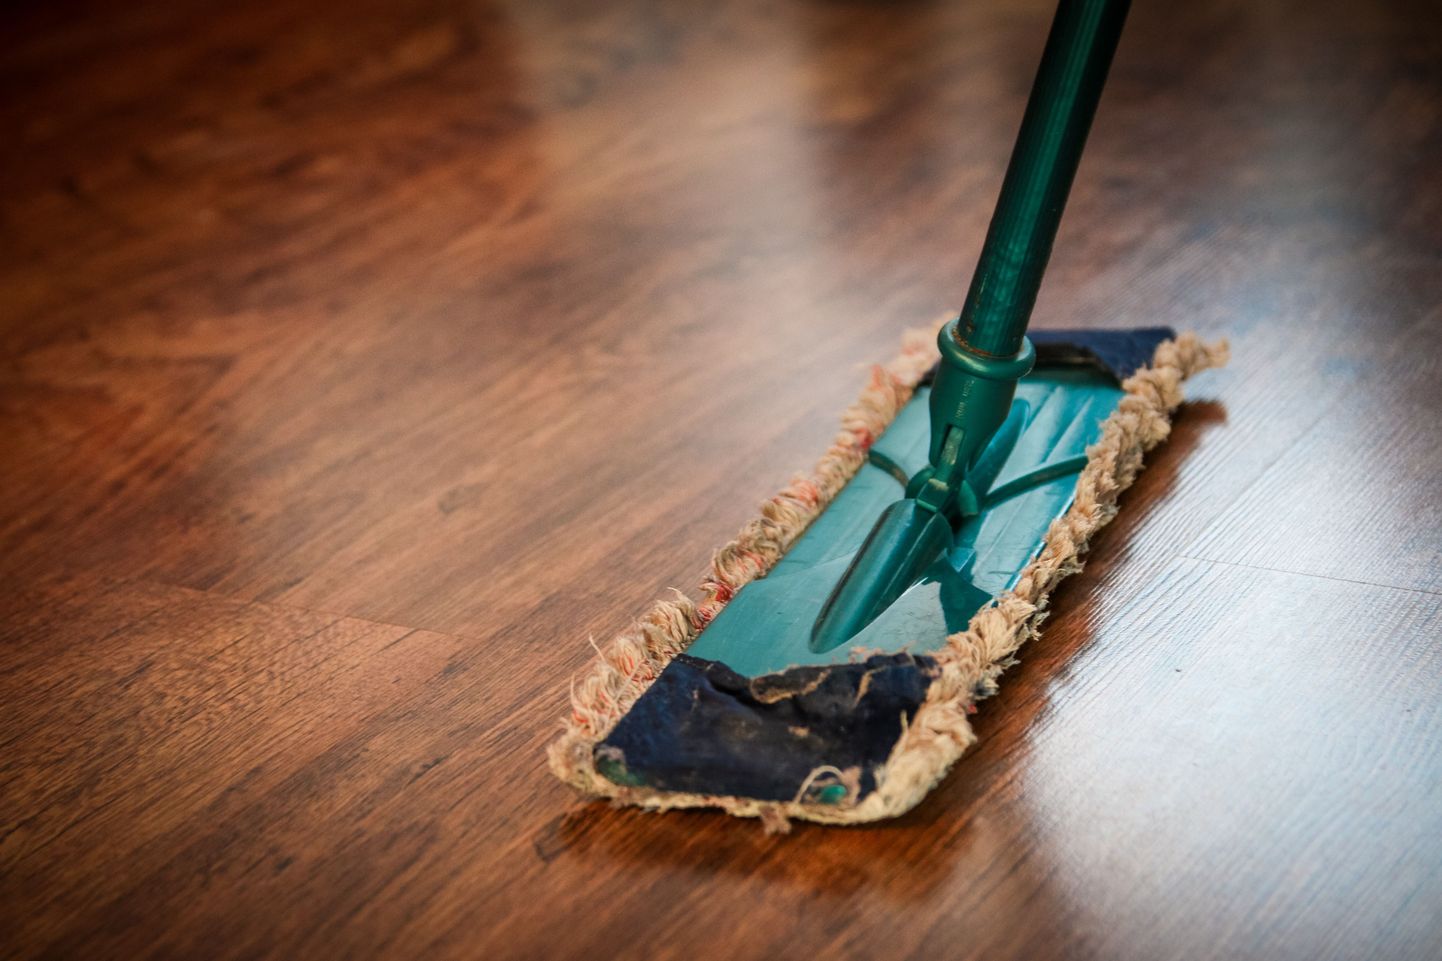 Õnneks ei ole vaja iga päev põrandaid pesta.